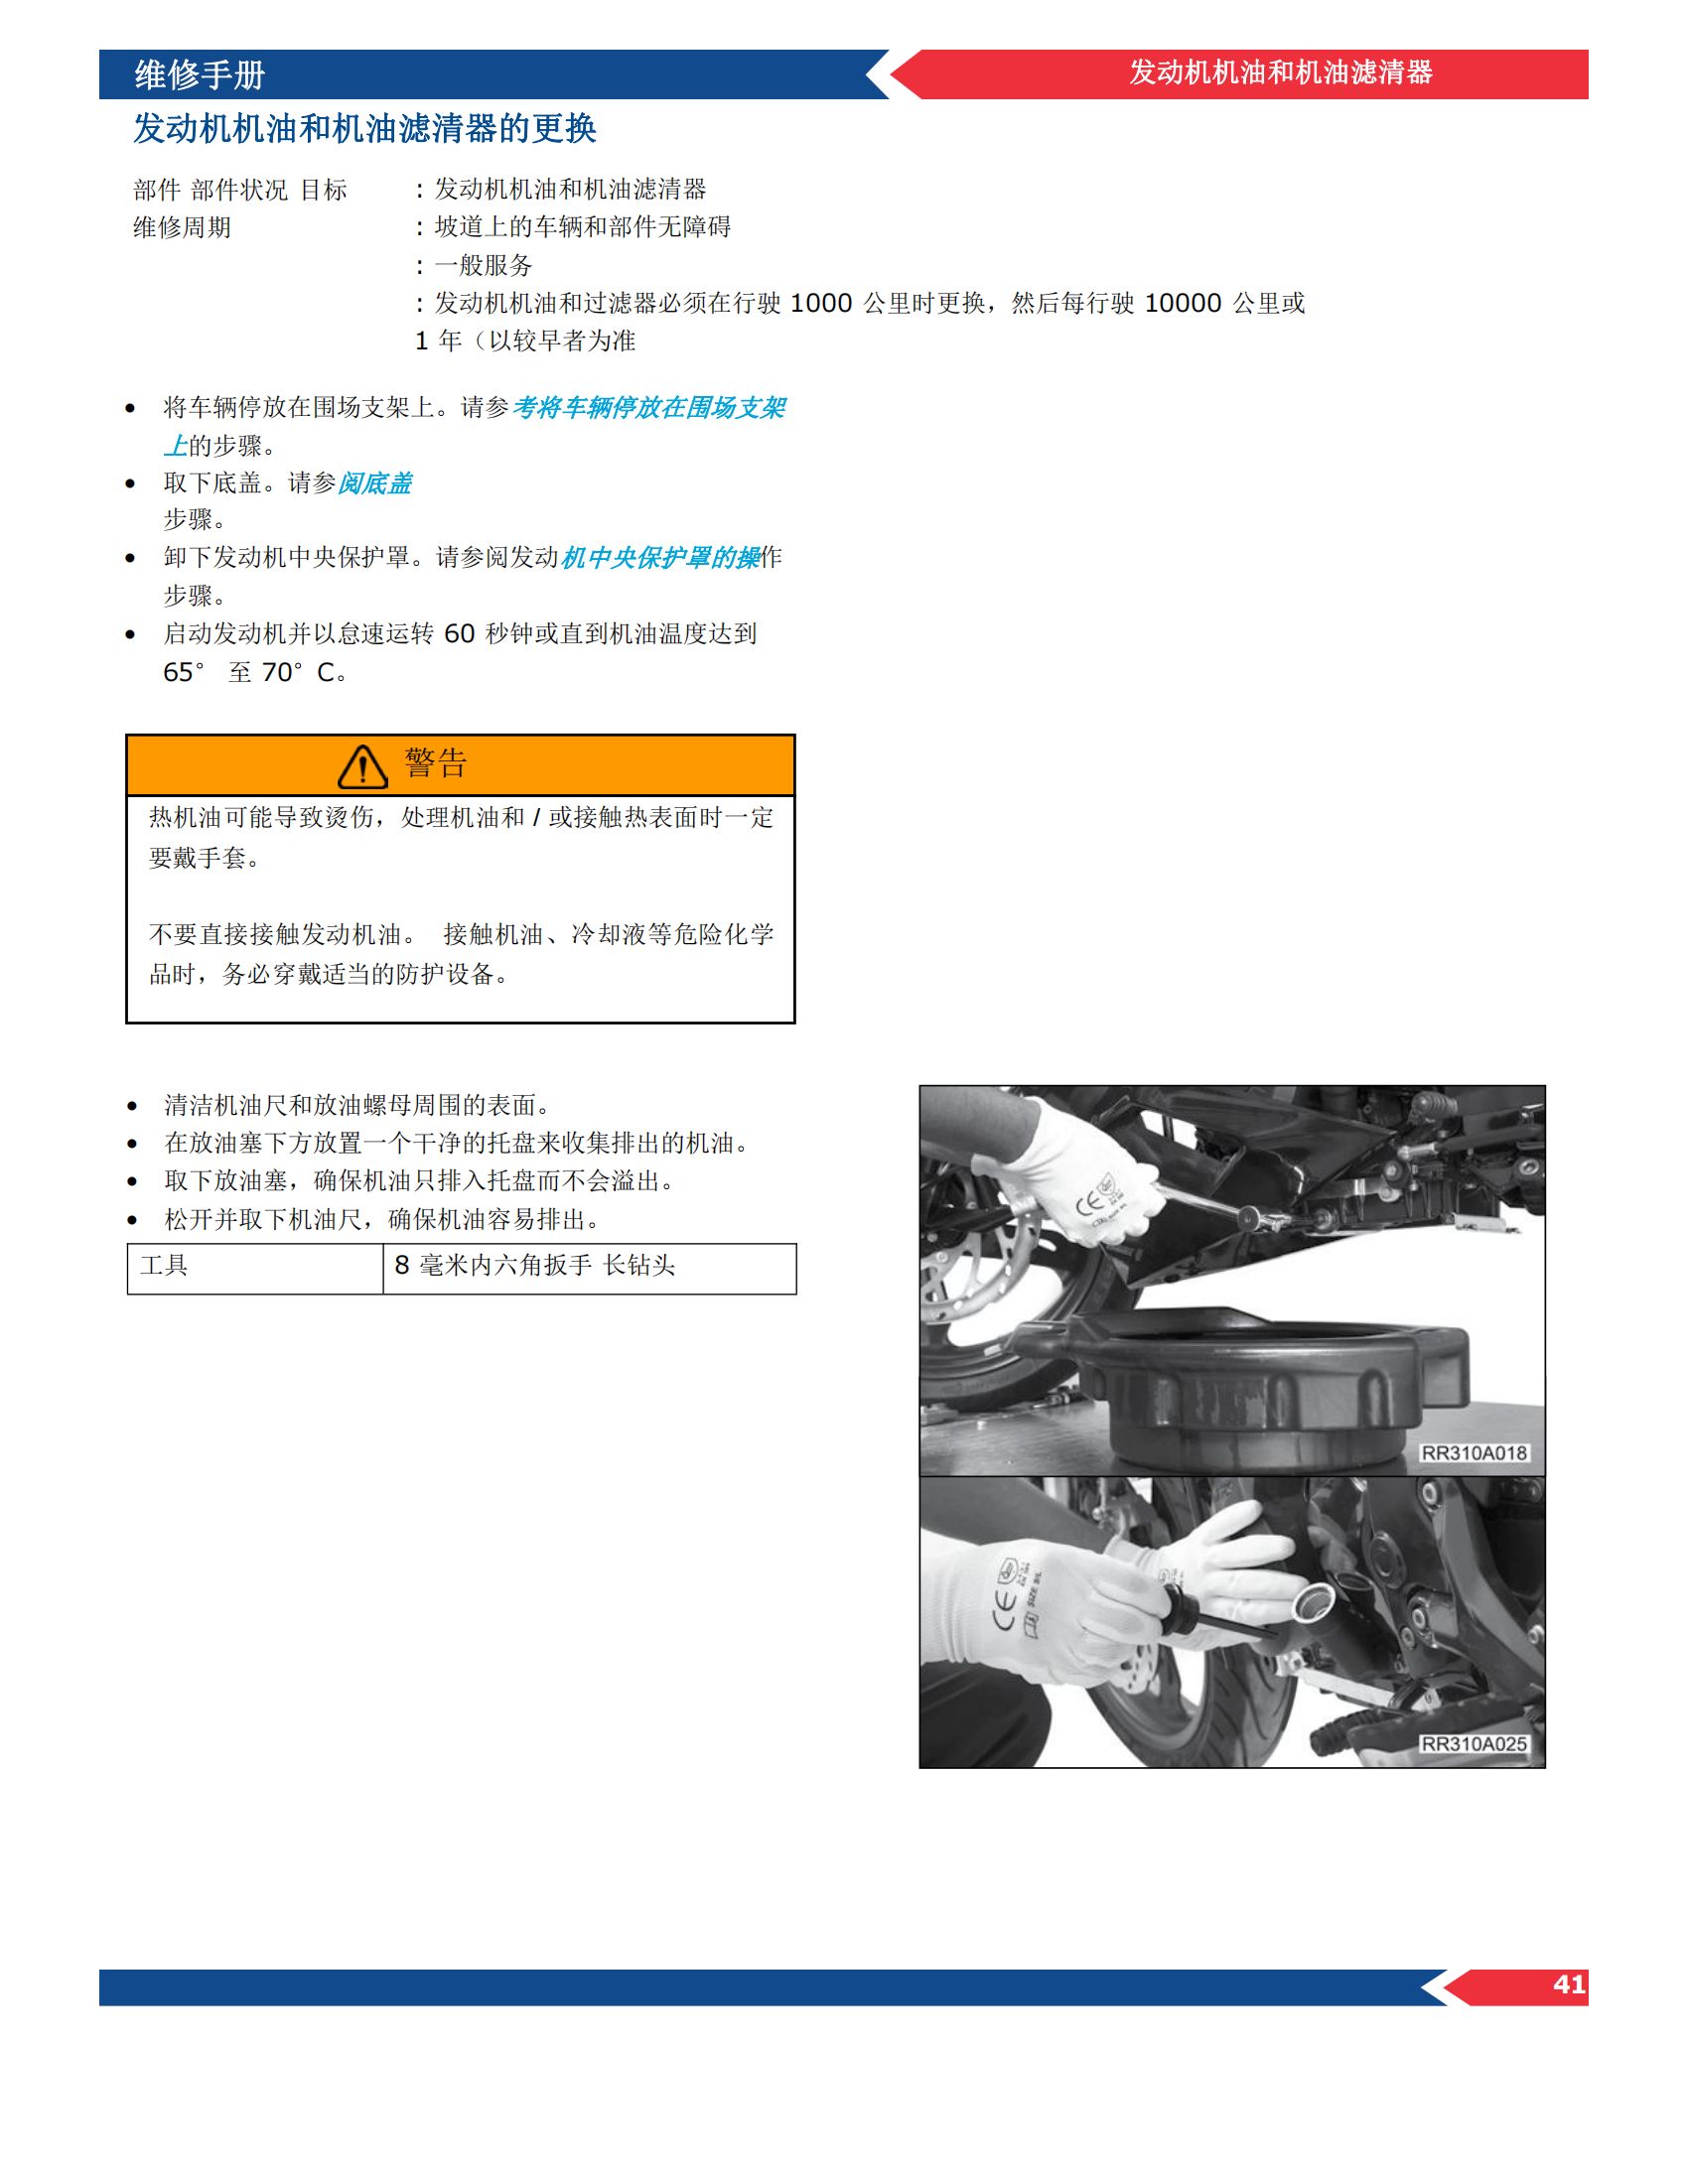 简体中文2023年宝马g310rr维修手册插图3